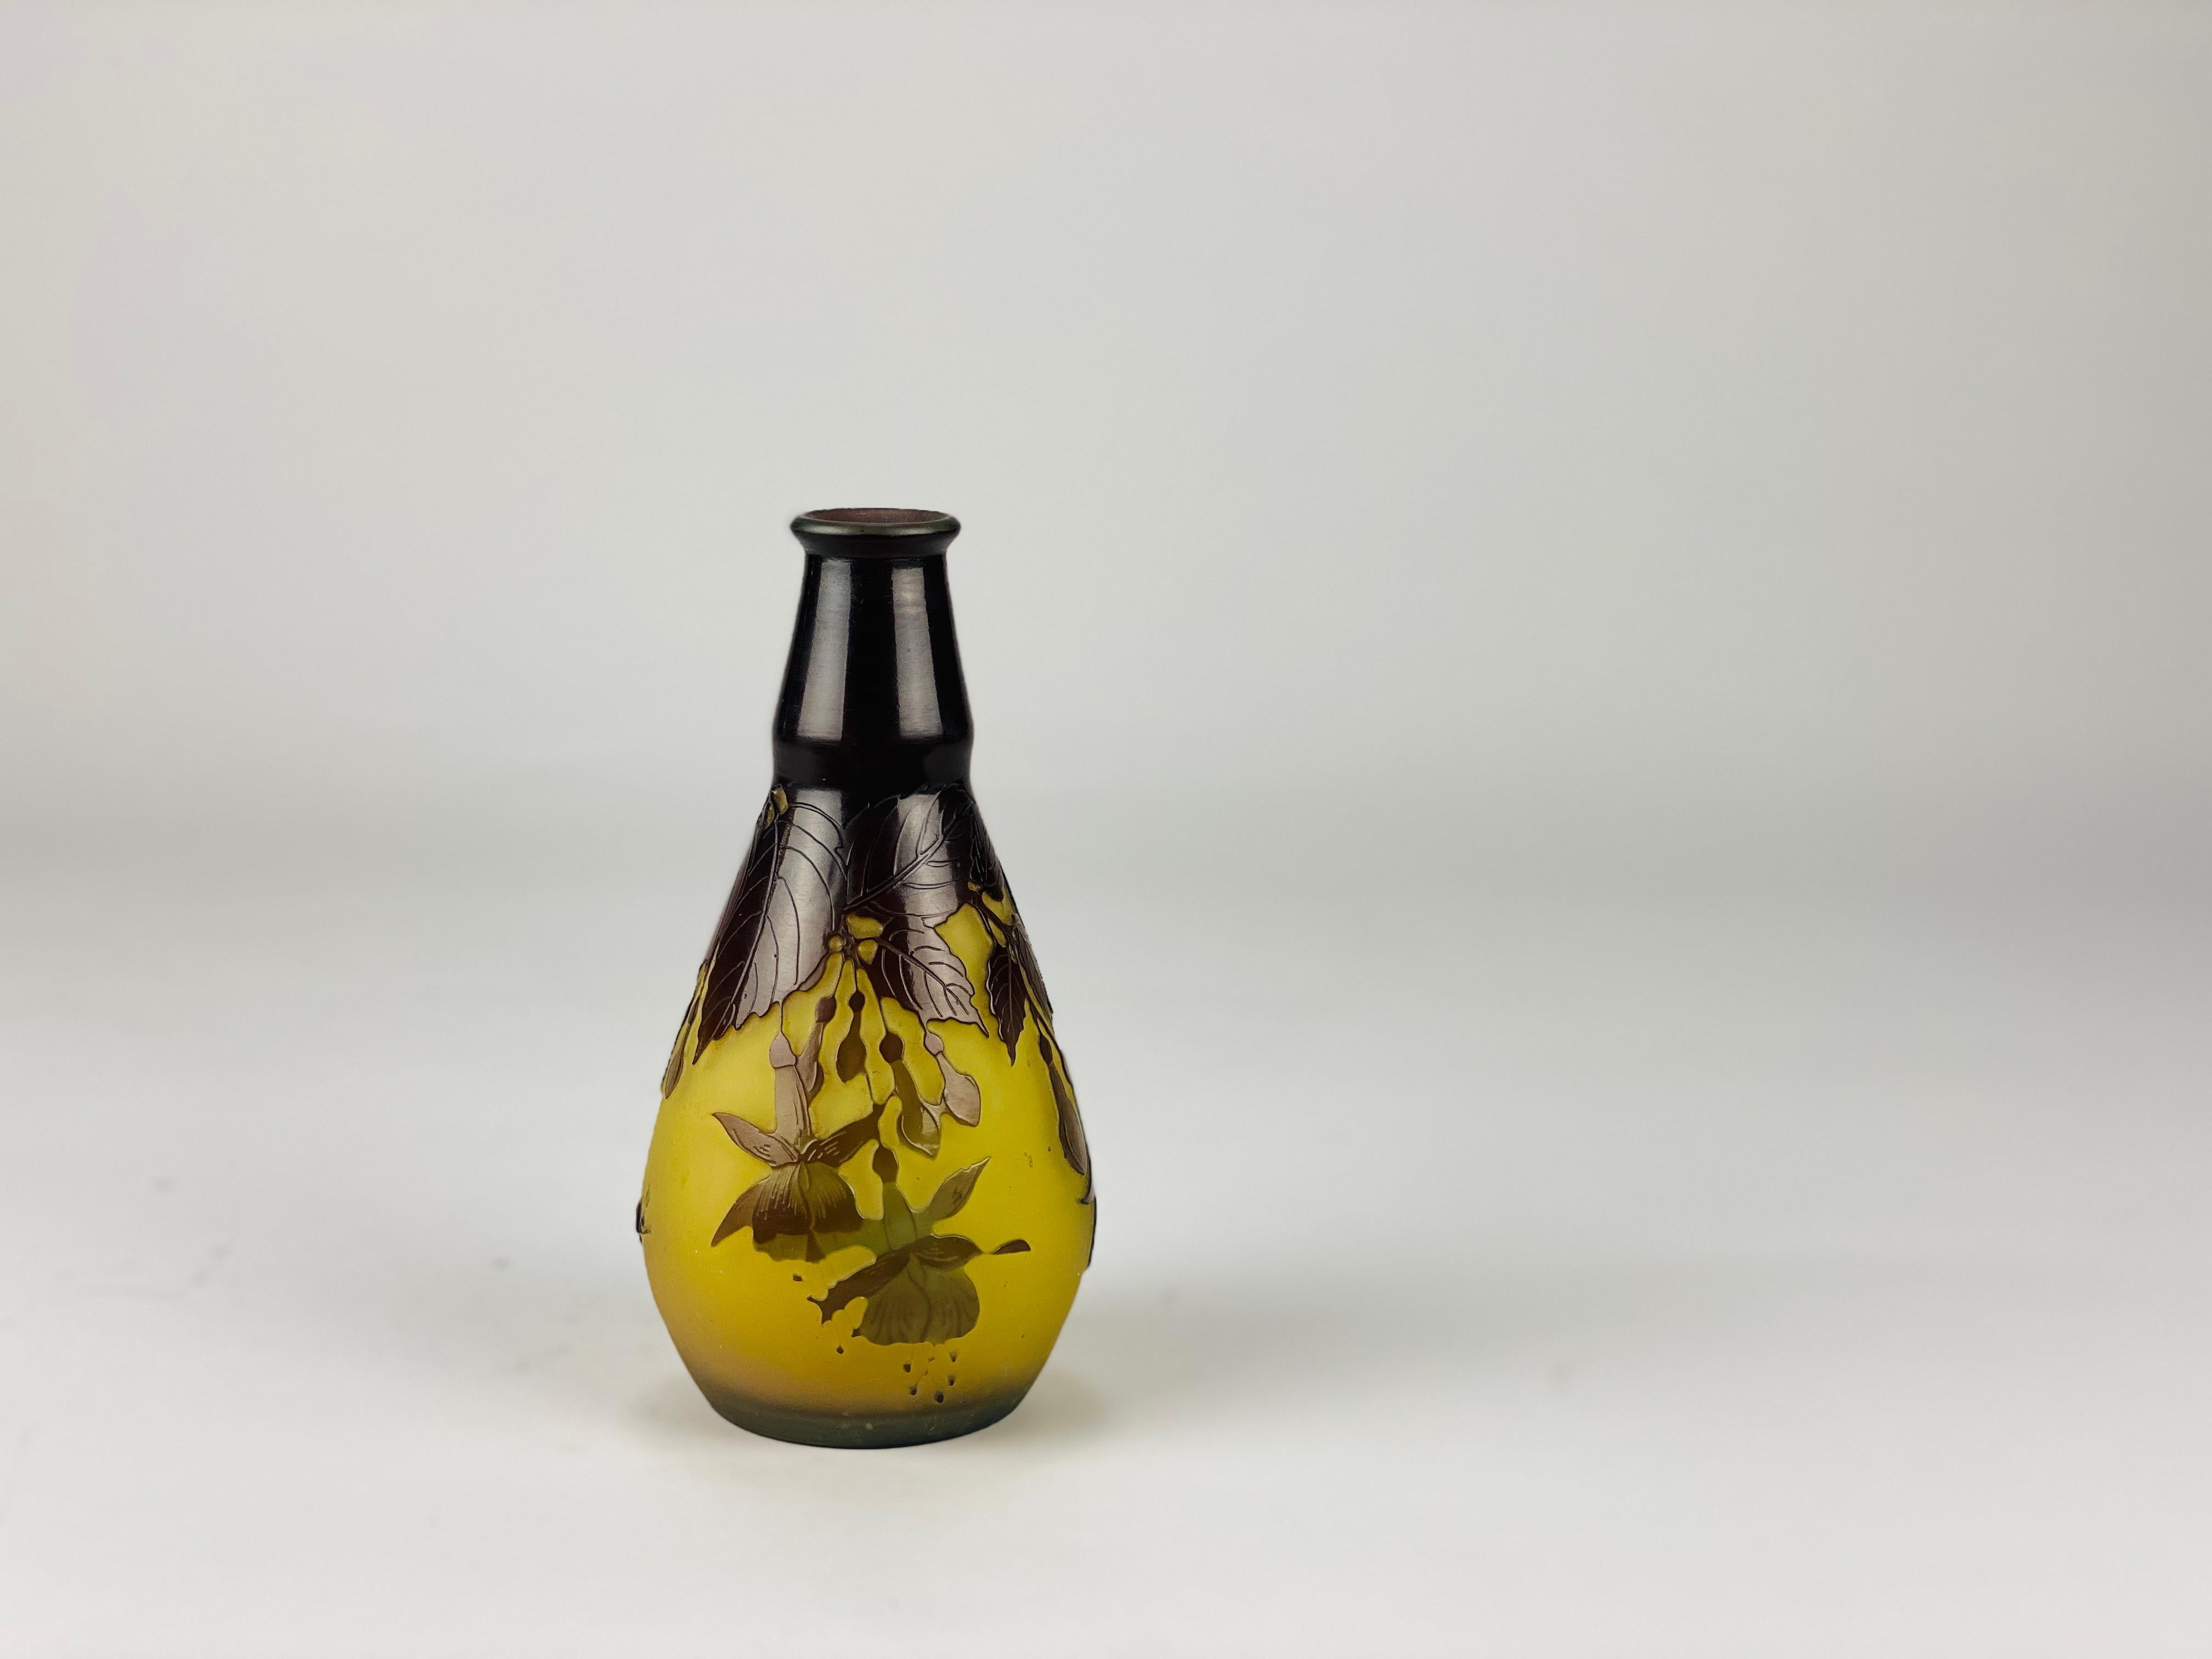  “Fuchsia Vase” Art Nouveau Cameo Glass Vase by Emile Gallé For Sale 2